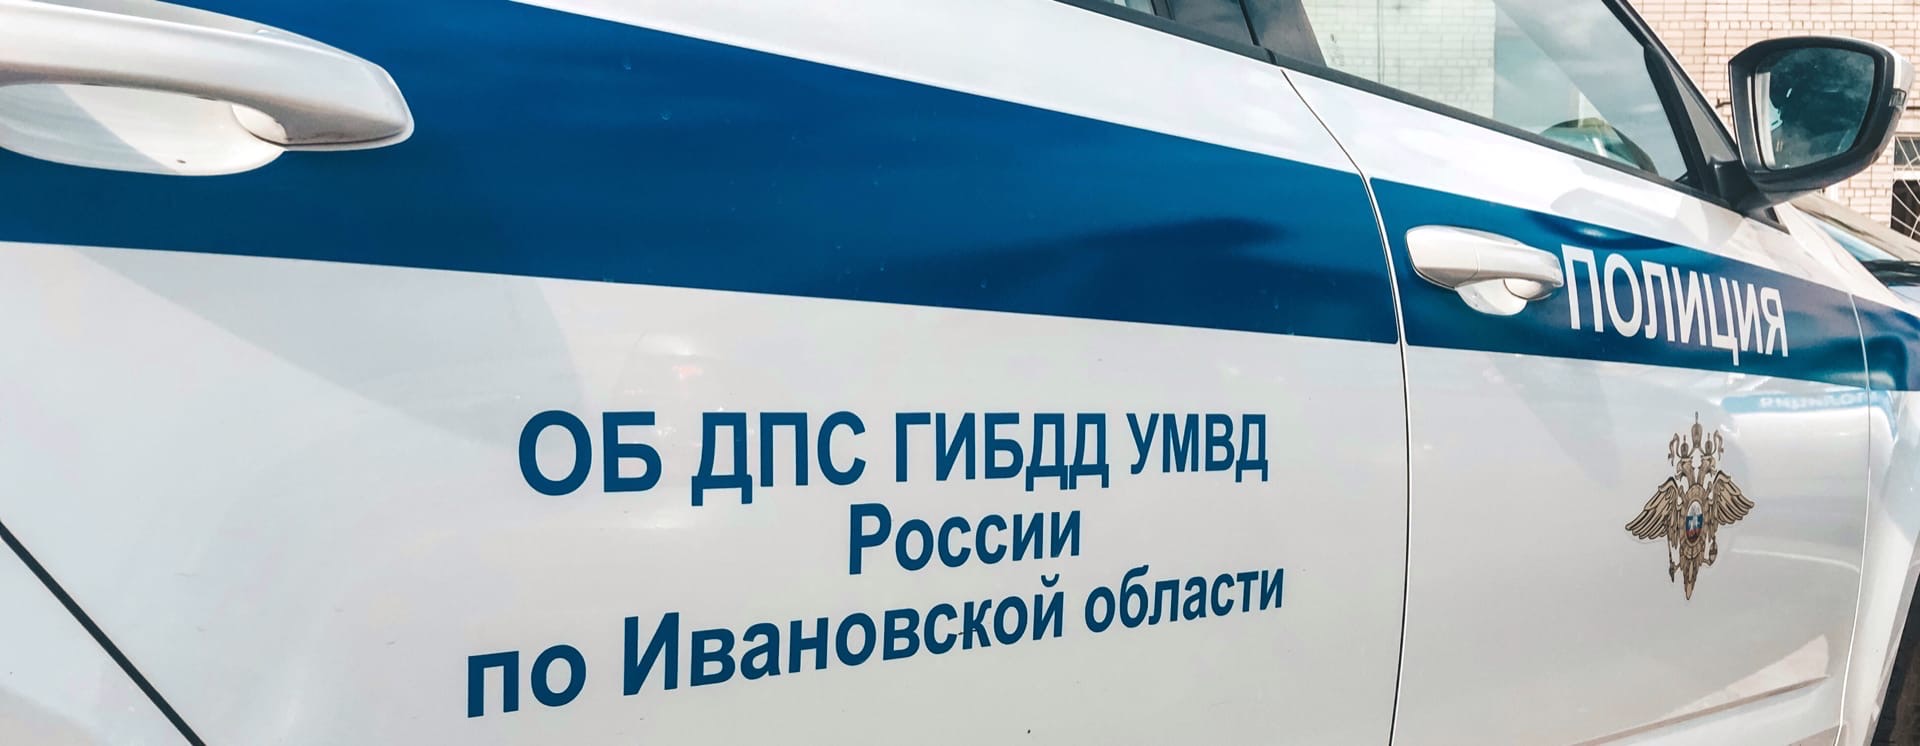 В ДТП в Ивановском районе пострадали 2 ребенка